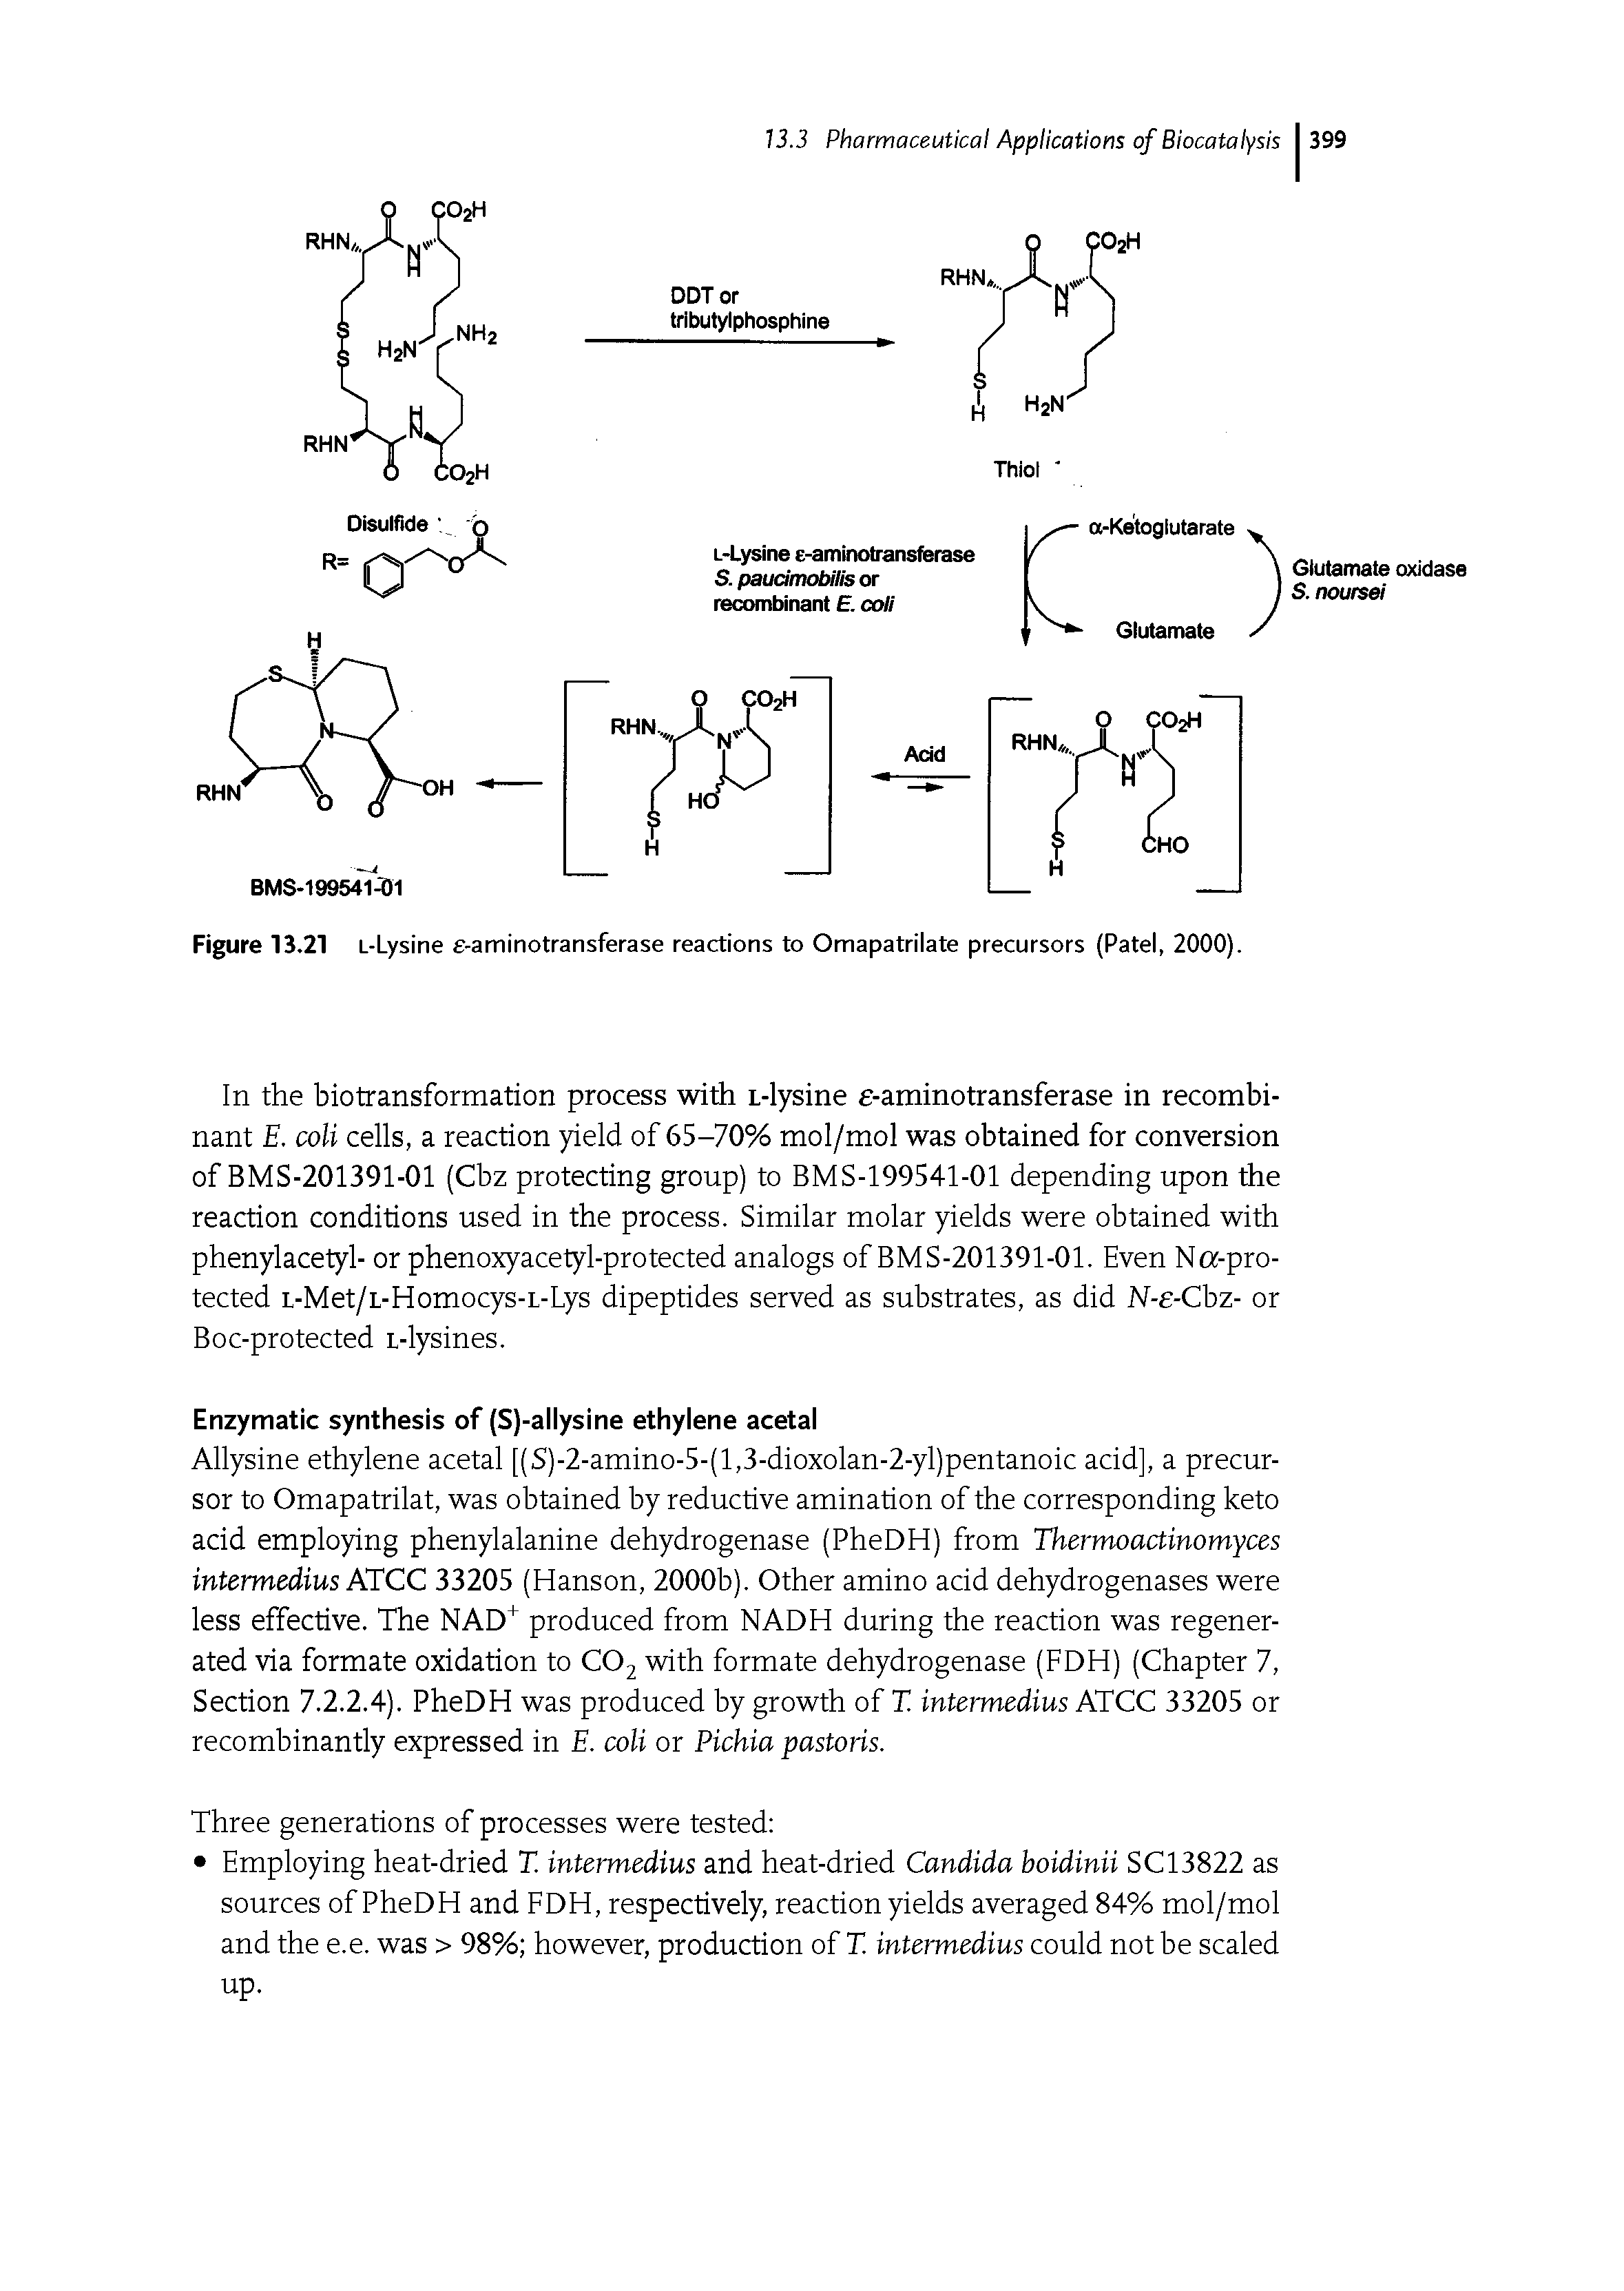 Figure 13.21 L-Lysine e-aminotransferase reactions to Omapatrilate precursors (Patel, 2000).